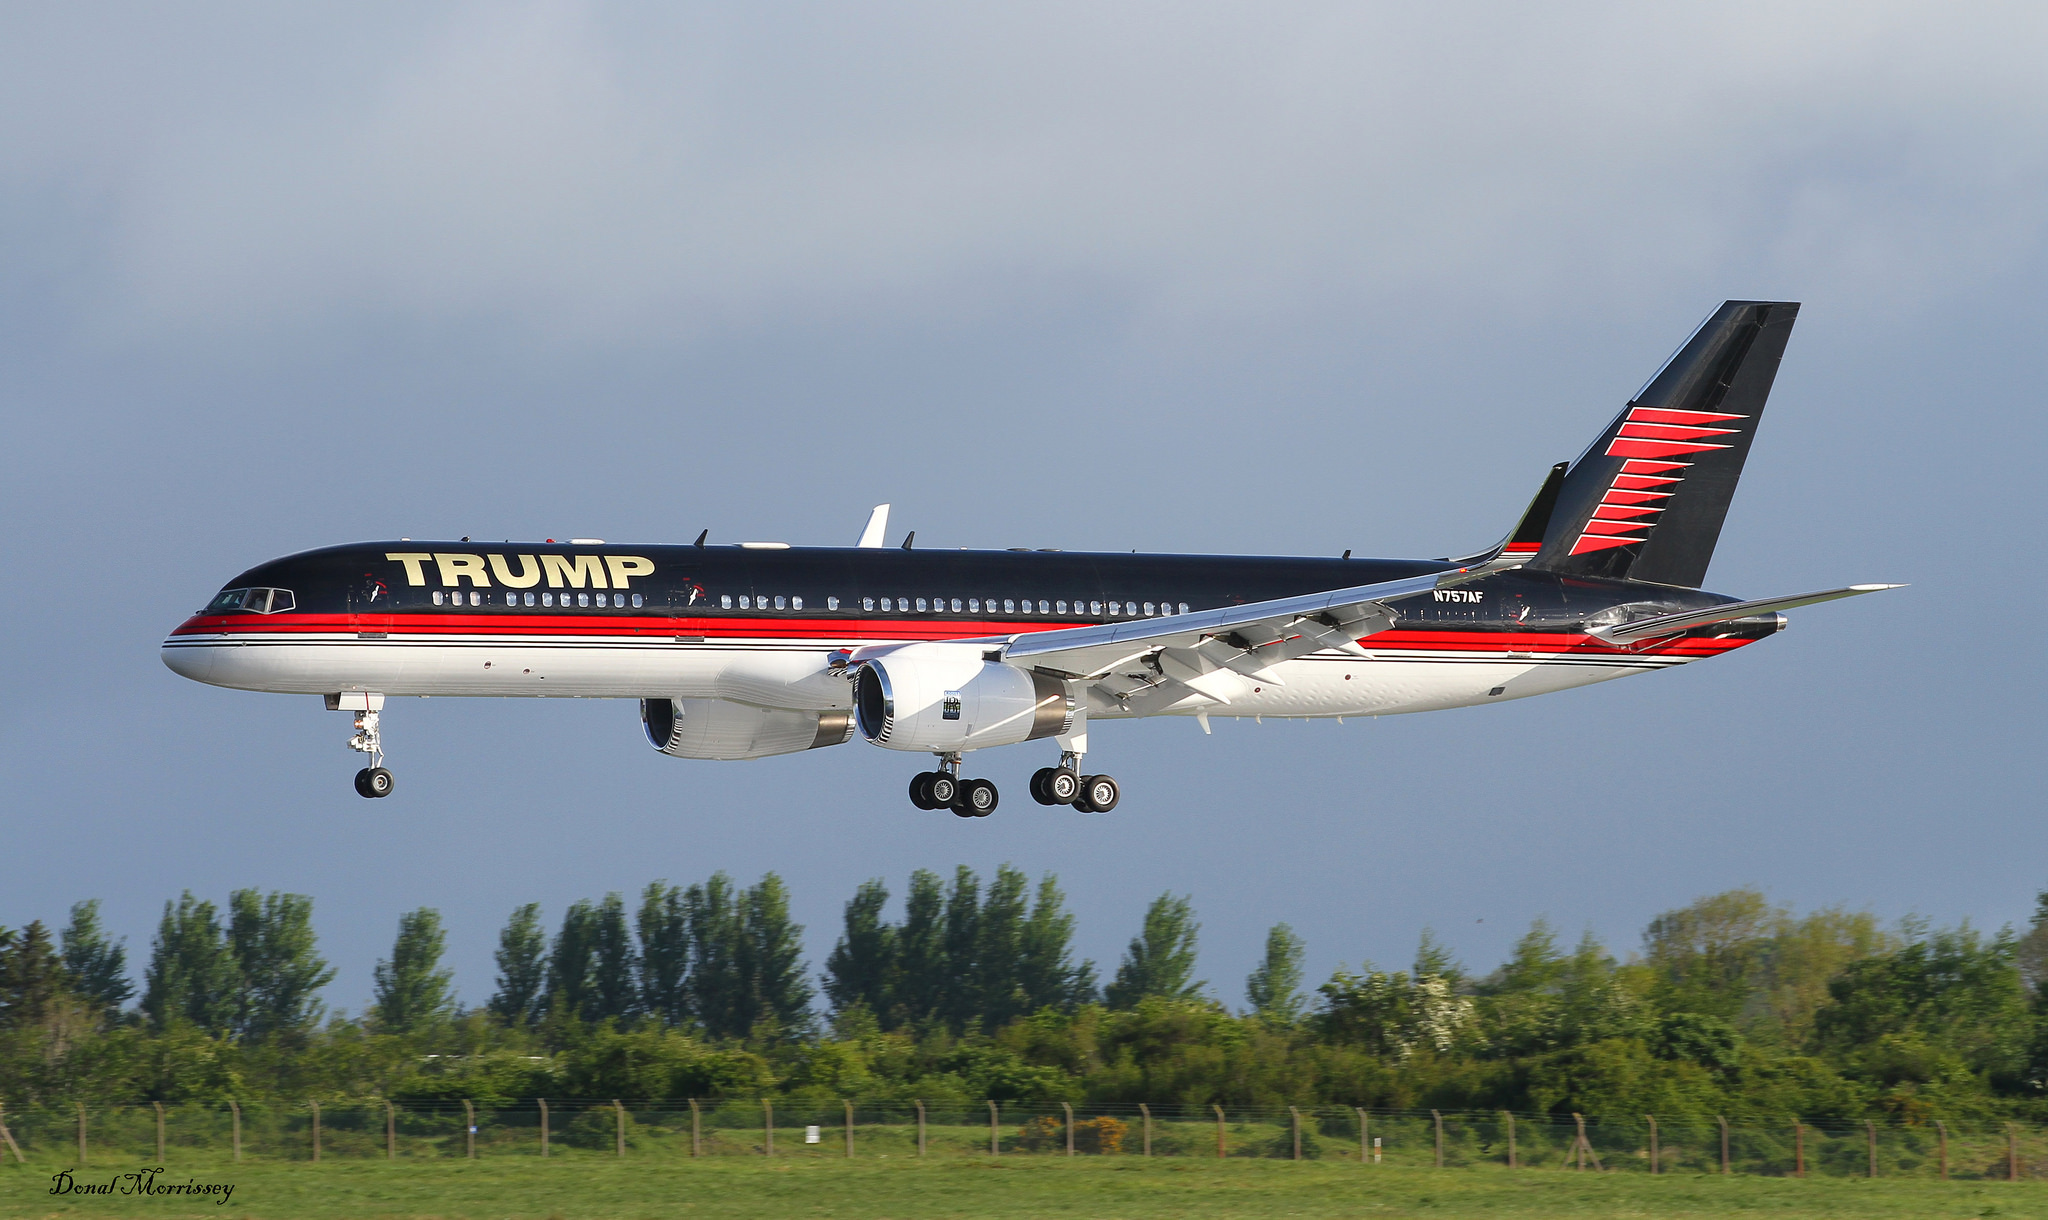 https://altoday.com/wp-content/uploads/2016/12/Donald-Trump-plane.jpg